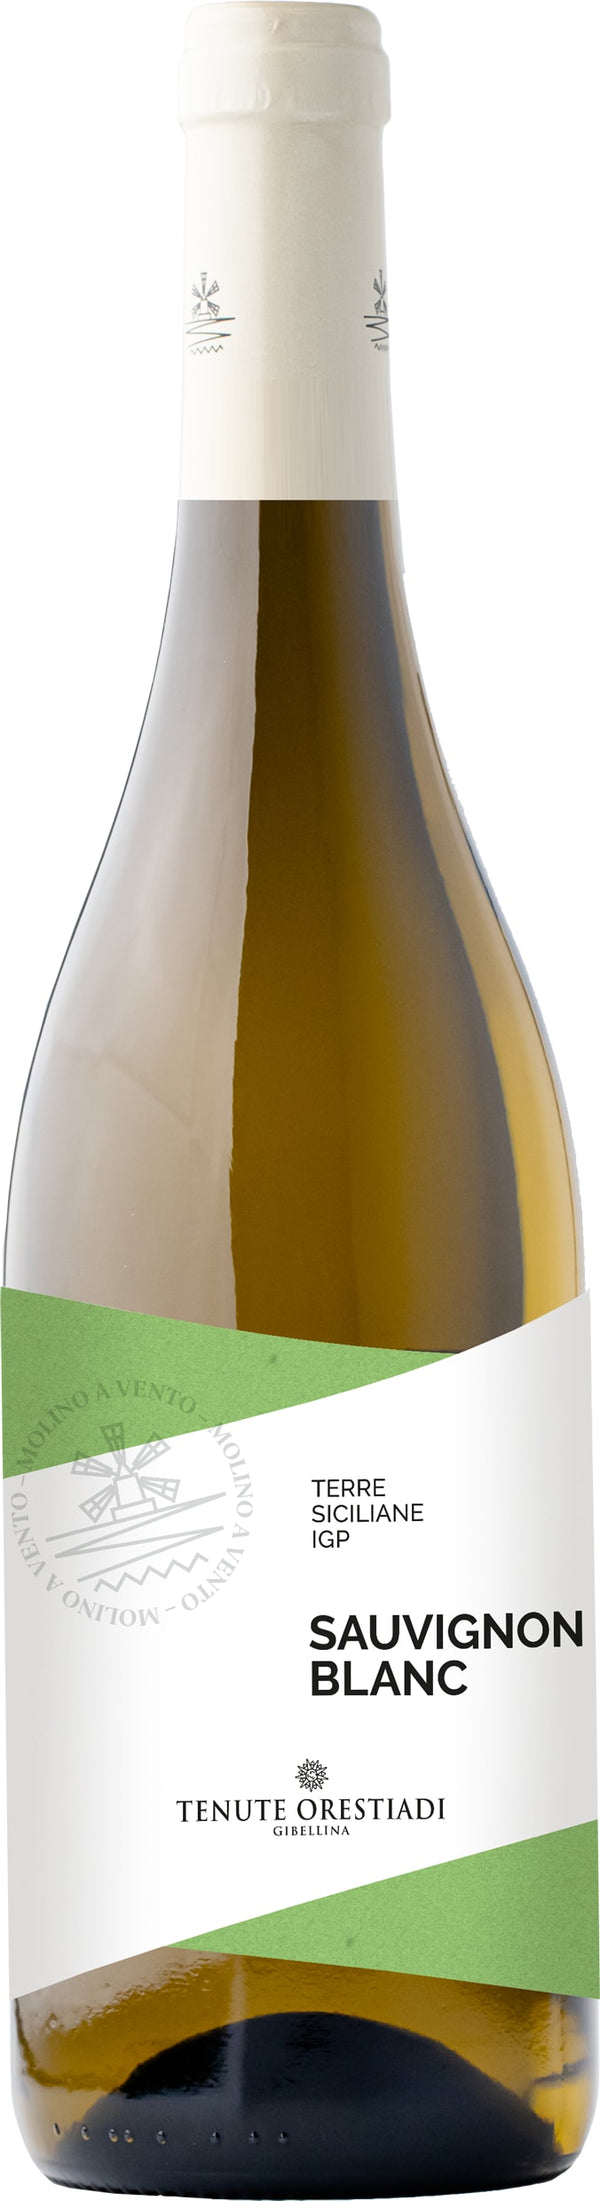 Tenute Orestiadi - Molino a Vento Sauvignon Blanc, IGT Terre Siciliane 2022 6x75cl - Just Wines 